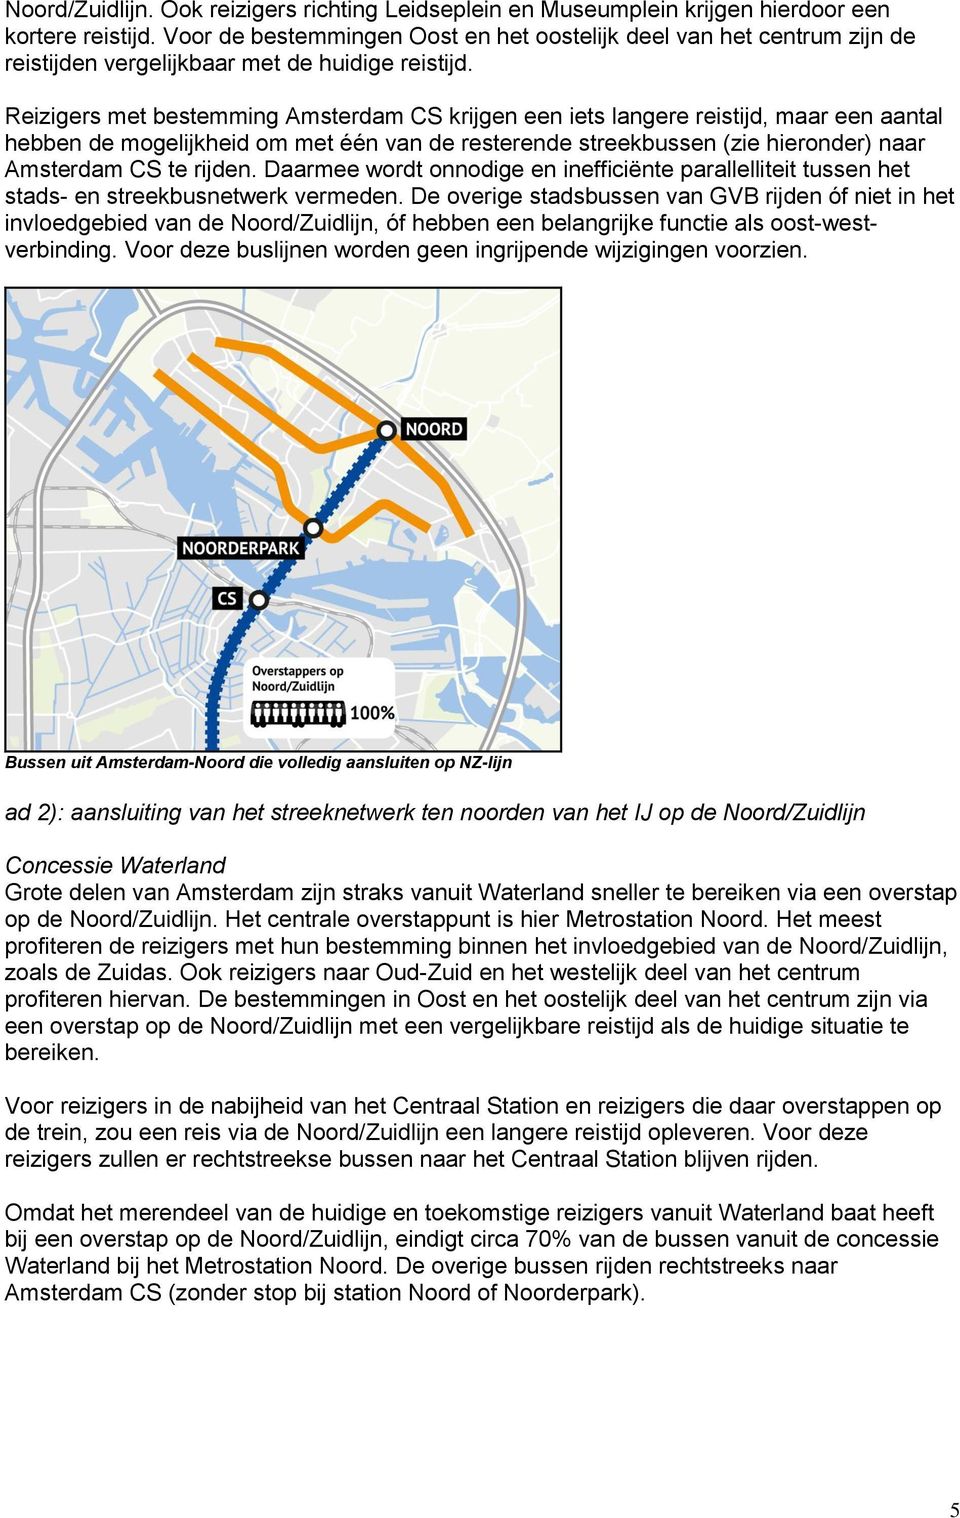 Reizigers met bestemming Amsterdam CS krijgen een iets langere reistijd, maar een aantal hebben de mogelijkheid om met één van de resterende streekbussen (zie hieronder) naar Amsterdam CS te rijden.